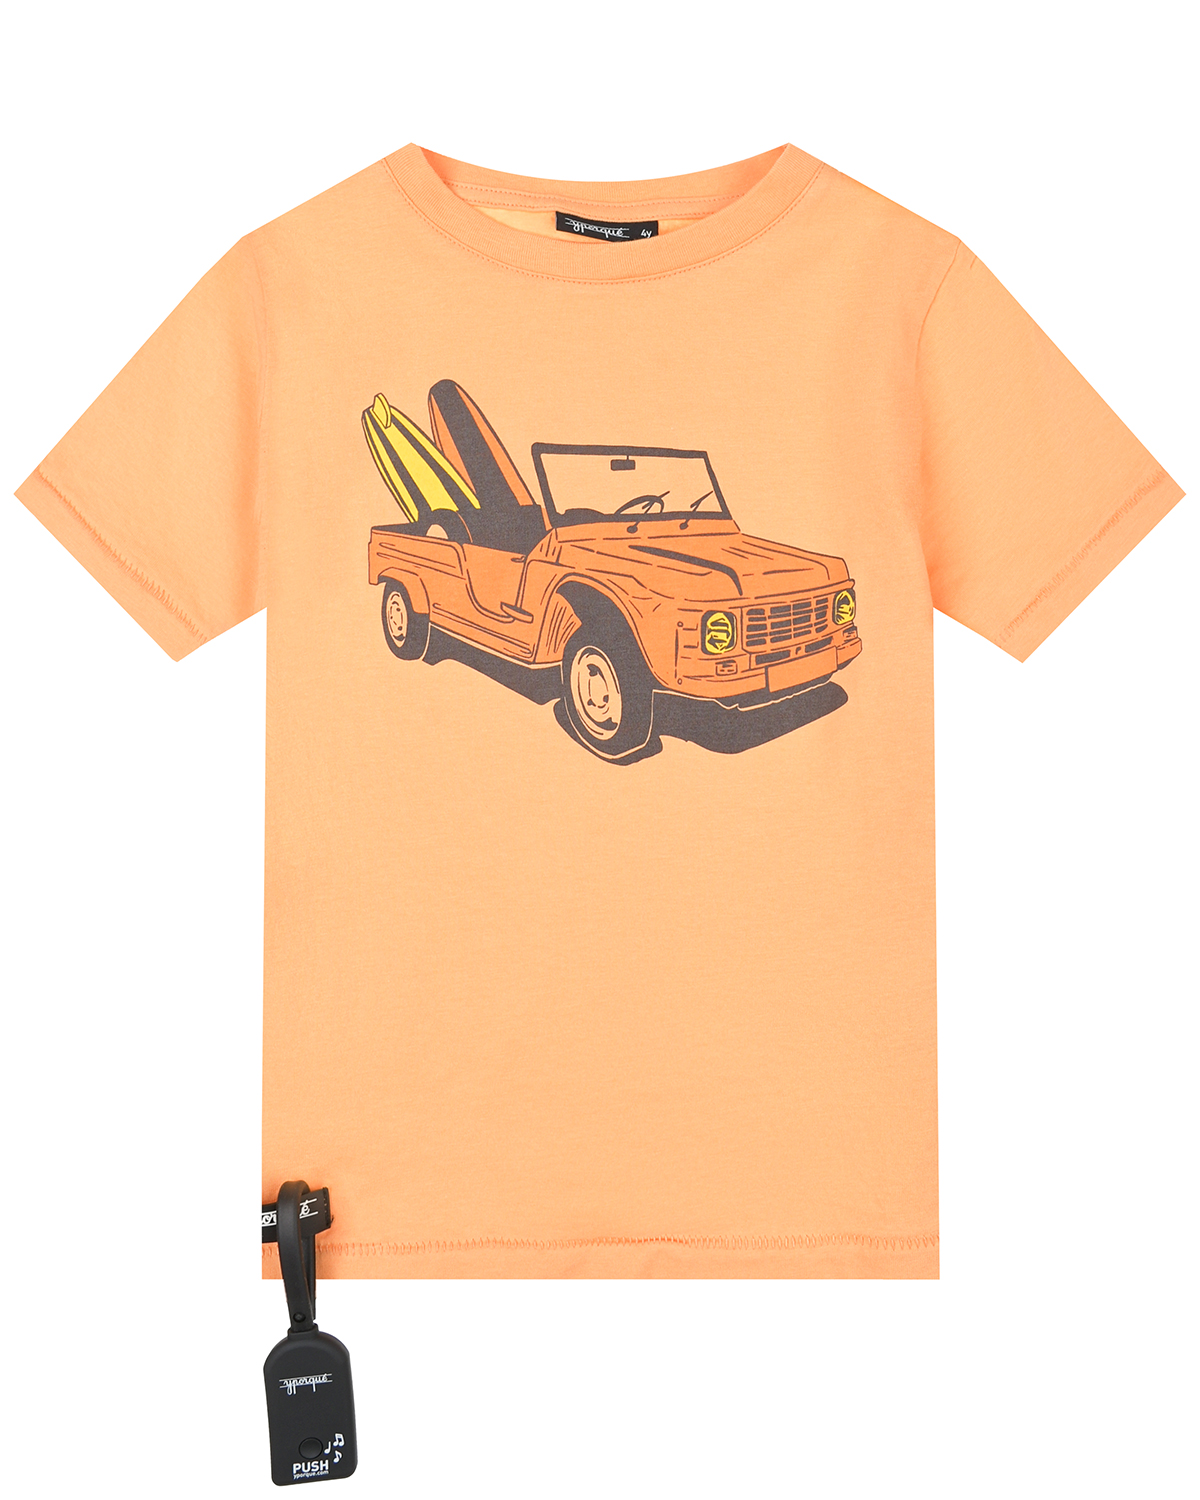 Оранжевая футболка с принтом "машина" Yporque, размер 98, цвет оранжевый - фото 1